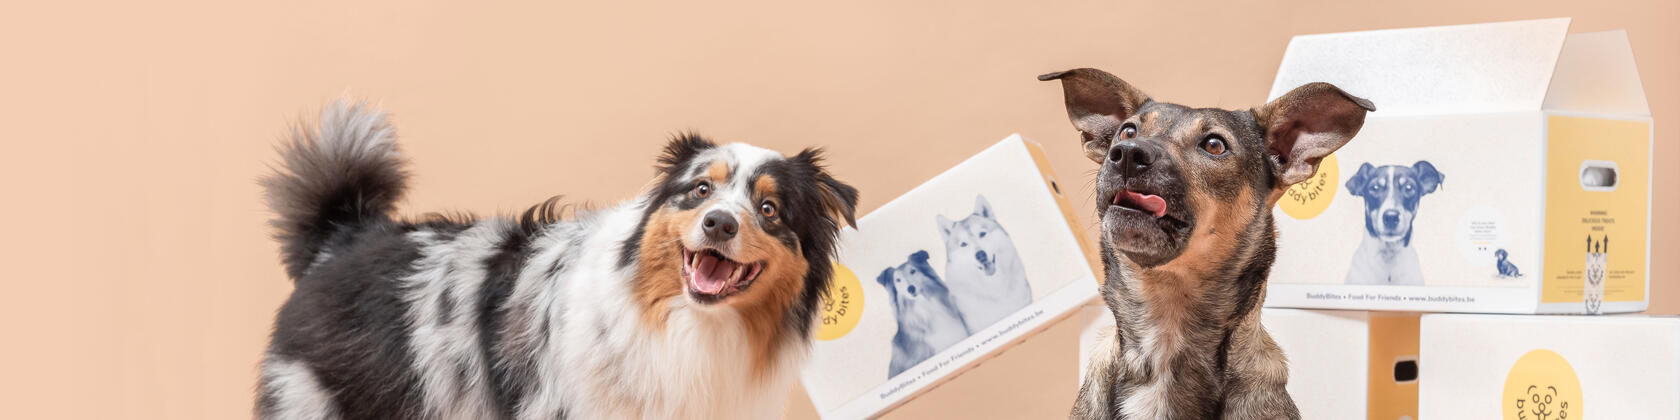 2 honden met achter zich dozen van buddybites hondenvoeding waarop logo + foto van hond 